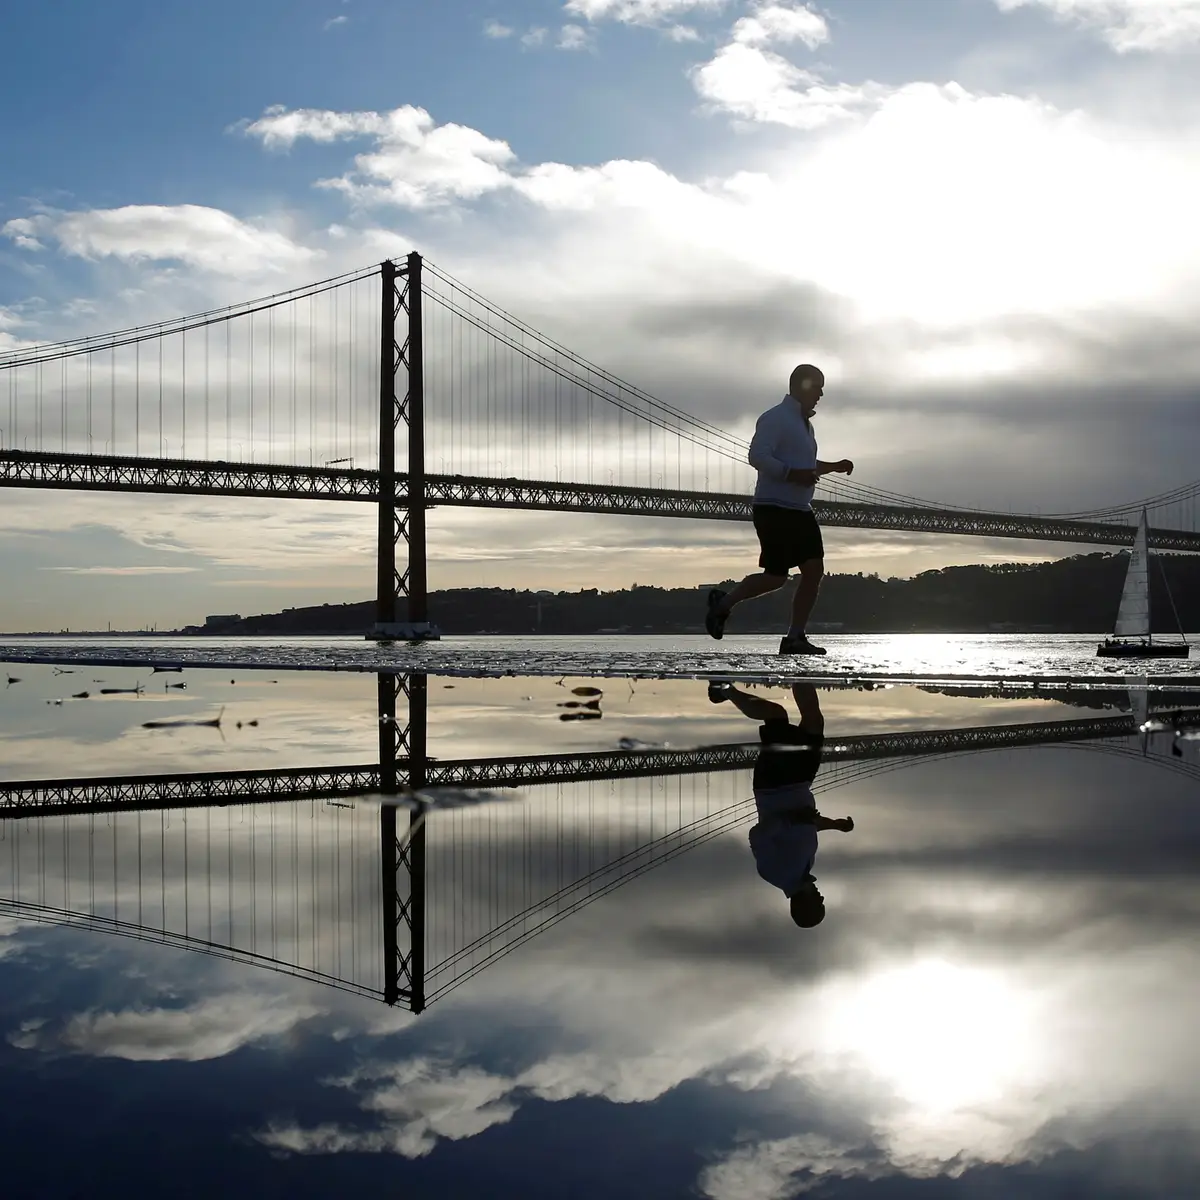 O que é a Área Metropolitana de Lisboa (AML)? 6 coisas que talvez não saibas